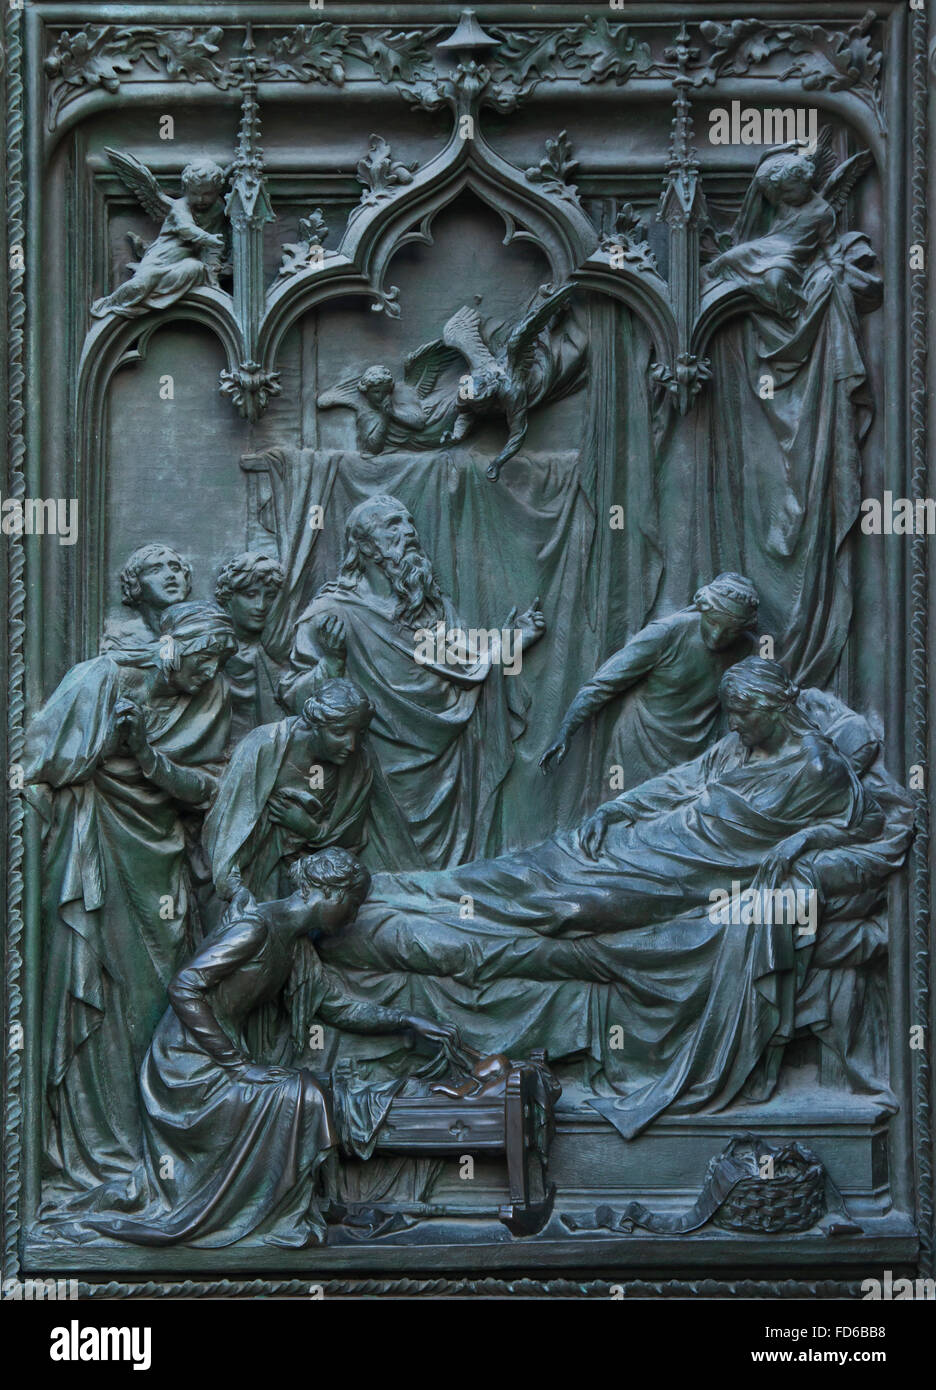 La Nativité de la Vierge Marie. Détail de la porte de bronze de la principale cathédrale de Milan (Duomo di Milano) à Milan, Italie. La porte de bronze a été conçu par le sculpteur italien Ludovico Pogliaghi en 1894-1908. Banque D'Images